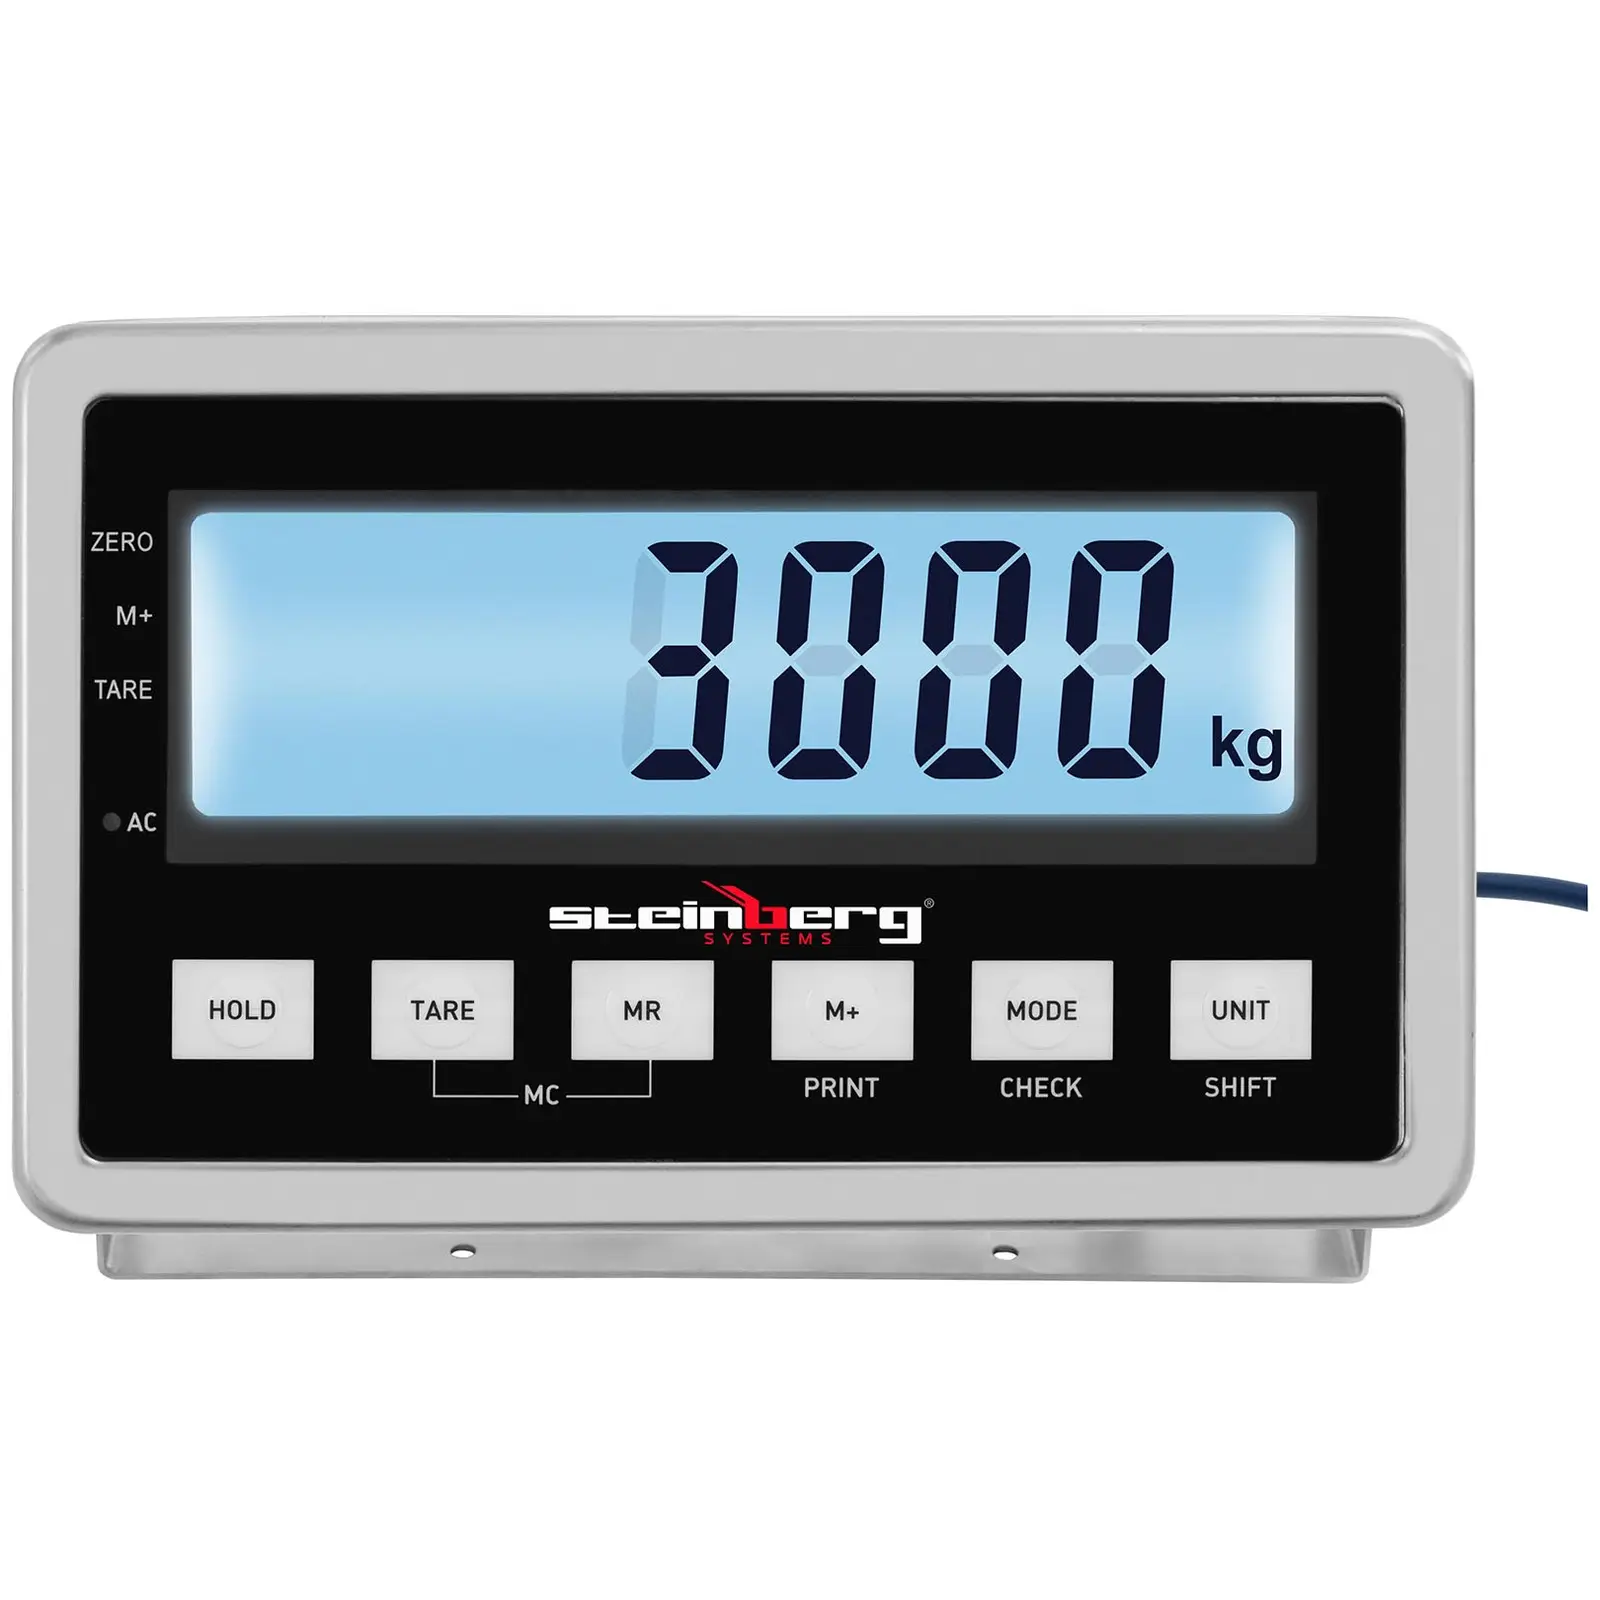 Talna tehtnica - 3000 kg / 1 kg - 1500 x 1500 mm - LCD